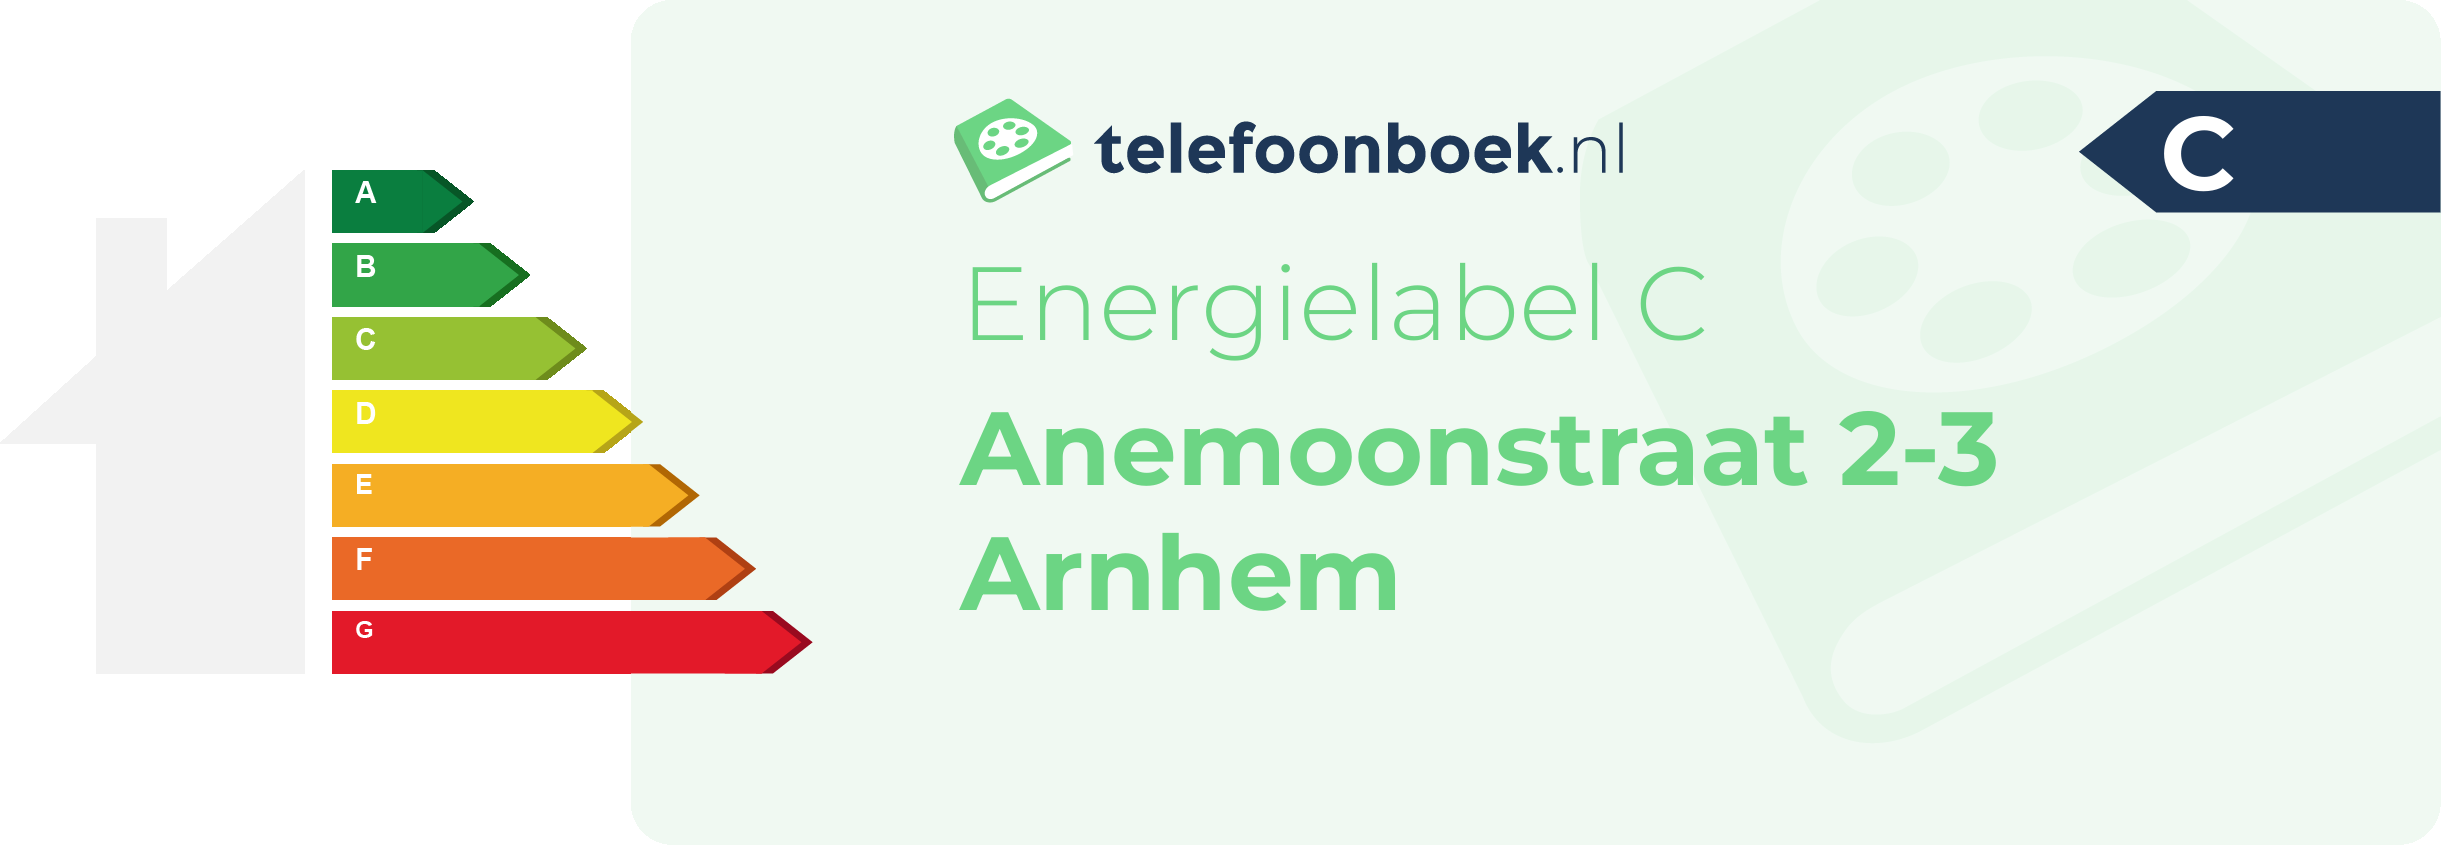 Energielabel Anemoonstraat 2-3 Arnhem